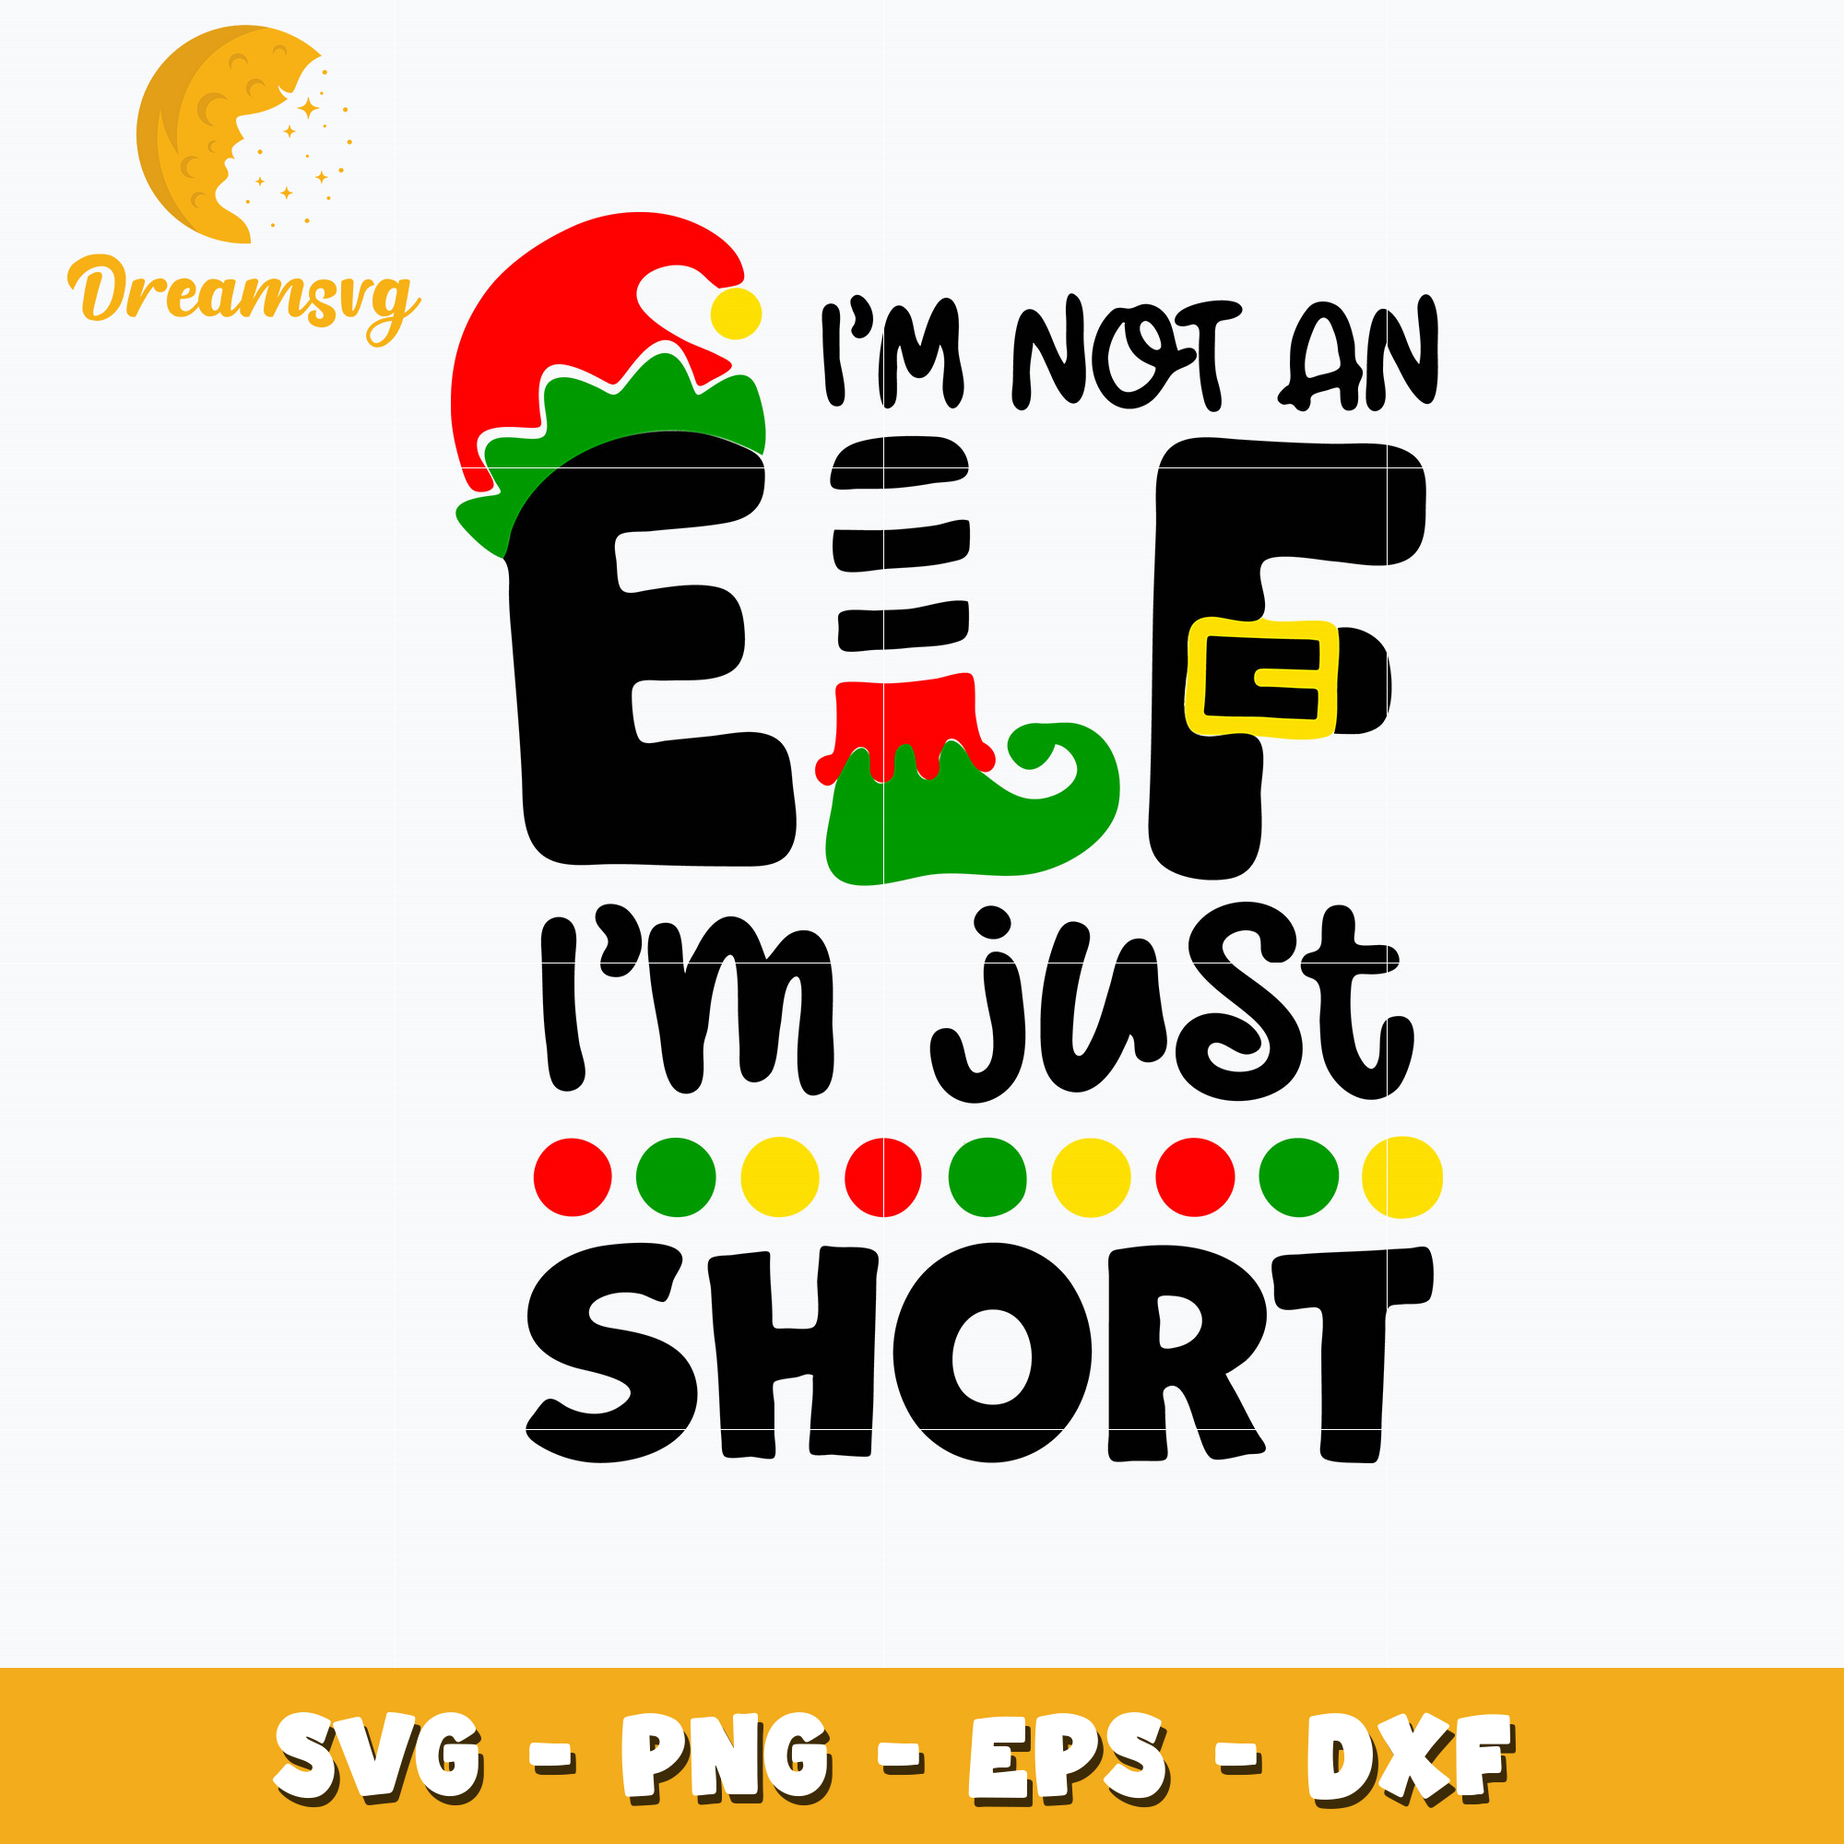 I’m Not an Elf, I’m just short Svg